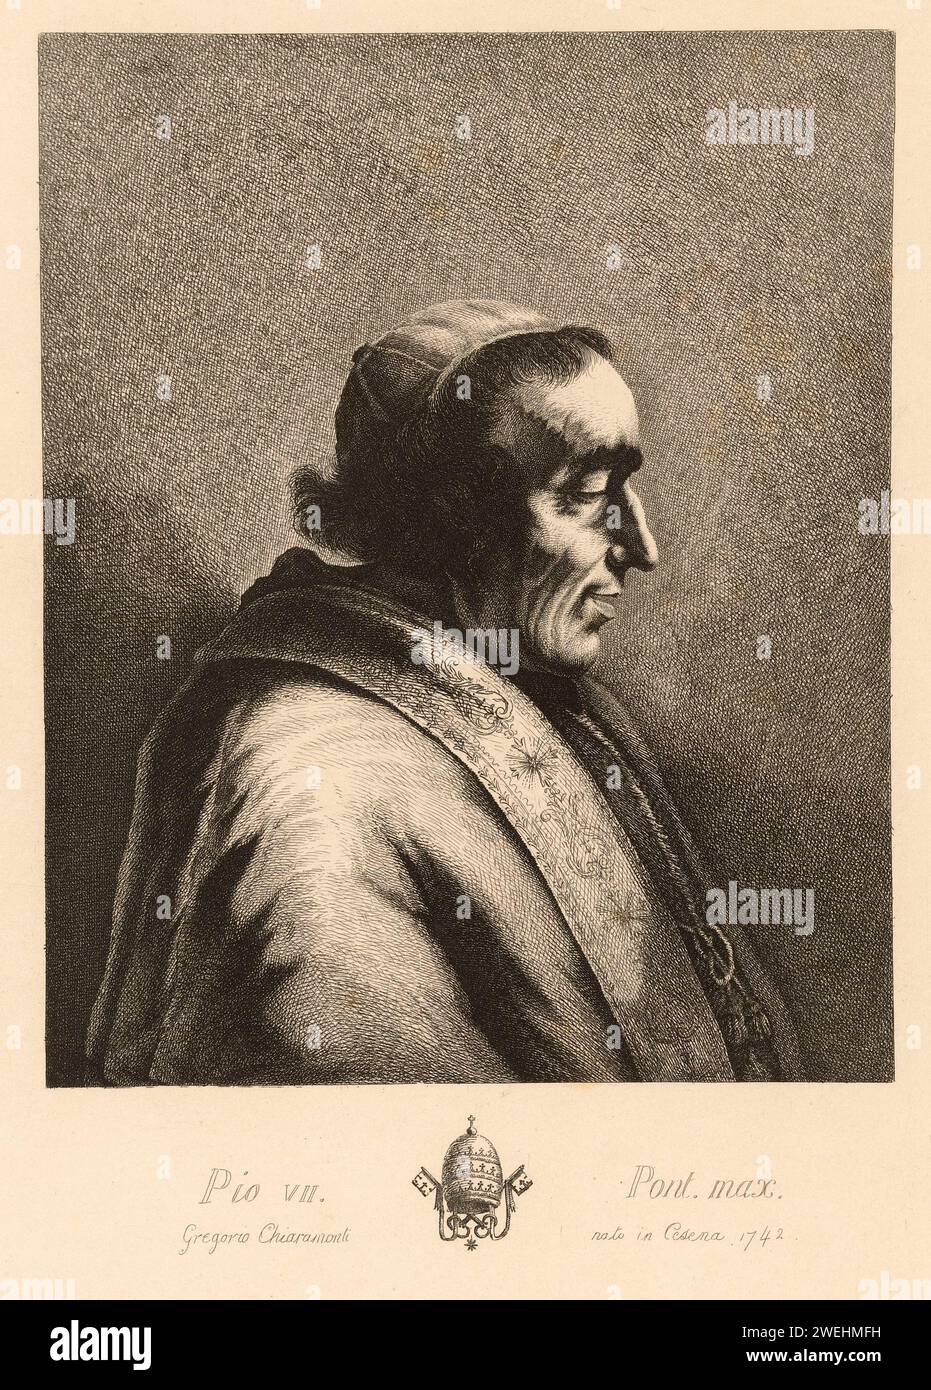 1820 c. , ROMA , ITALIA : il Papa PIO VII ( PIO VII , 1742 - 1823 ) , nato conte Barnaba Niccolò Maria Luigi Gregorio Chiaramonti . È stato Papa dal 1800 alla sua morte 1823 . Era il 251° Papa della Chiesa Cattolica . Ritratto di sconosciuta incisore , dopo Jean Jacques de Boissieu ( 1805 - 1899 ). - Papam - PAPA - RELIGIONE CATTOLICA - ritratto - incisione - illustrazione - illustrazione - CITTÀ DEL VATICANO - VATICANO - STORIA - FOTO STORICHE - Archivio GBB Foto Stock